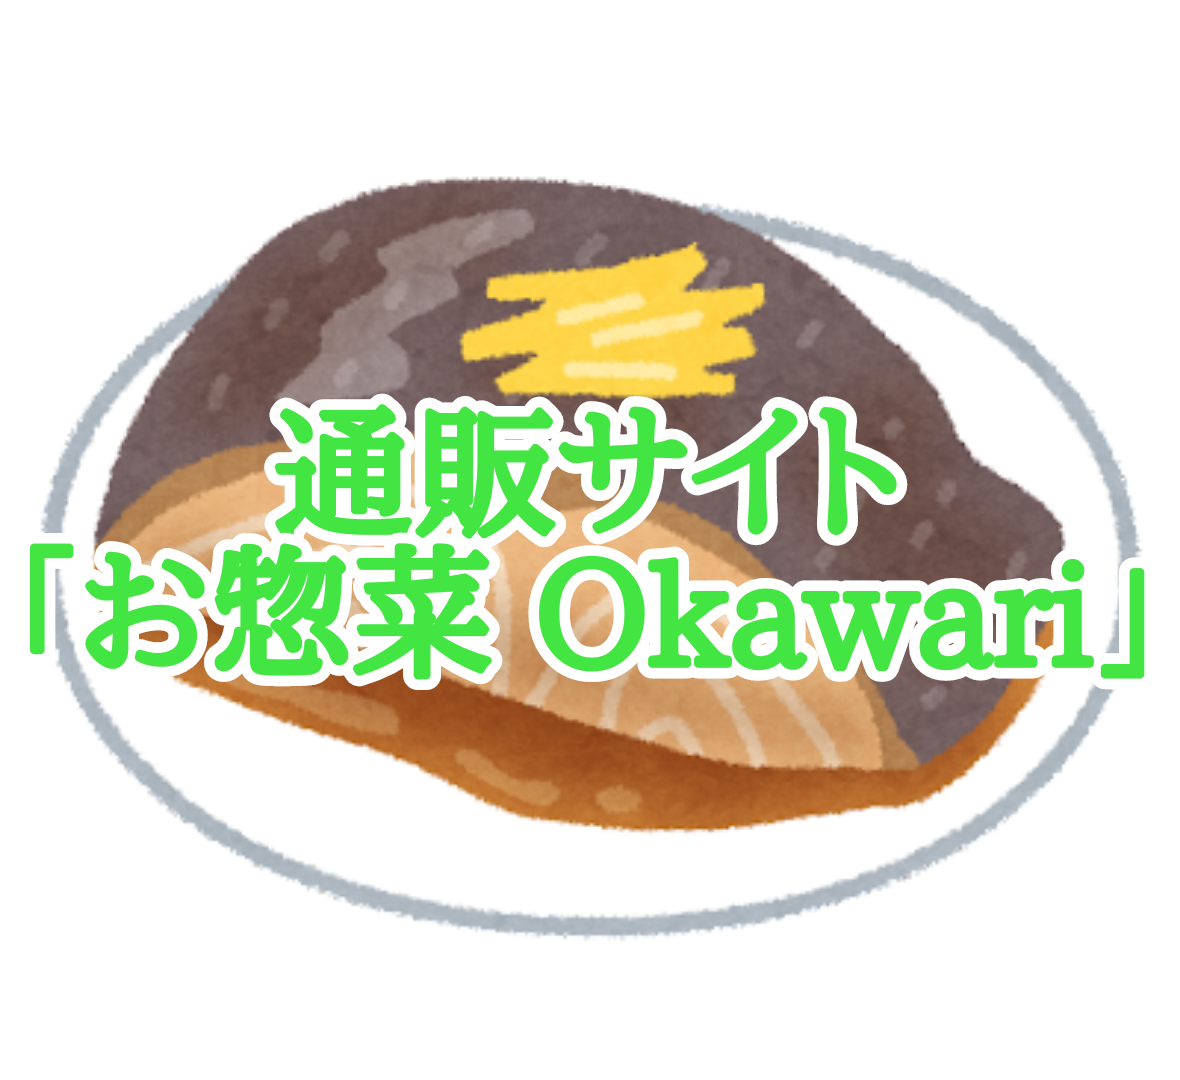 お惣菜通販サイト「お惣菜Okawari」は天然にこだわっていて、すべてのお惣菜が無添加で作られています。扱っているお惣菜の種類も豊富です。